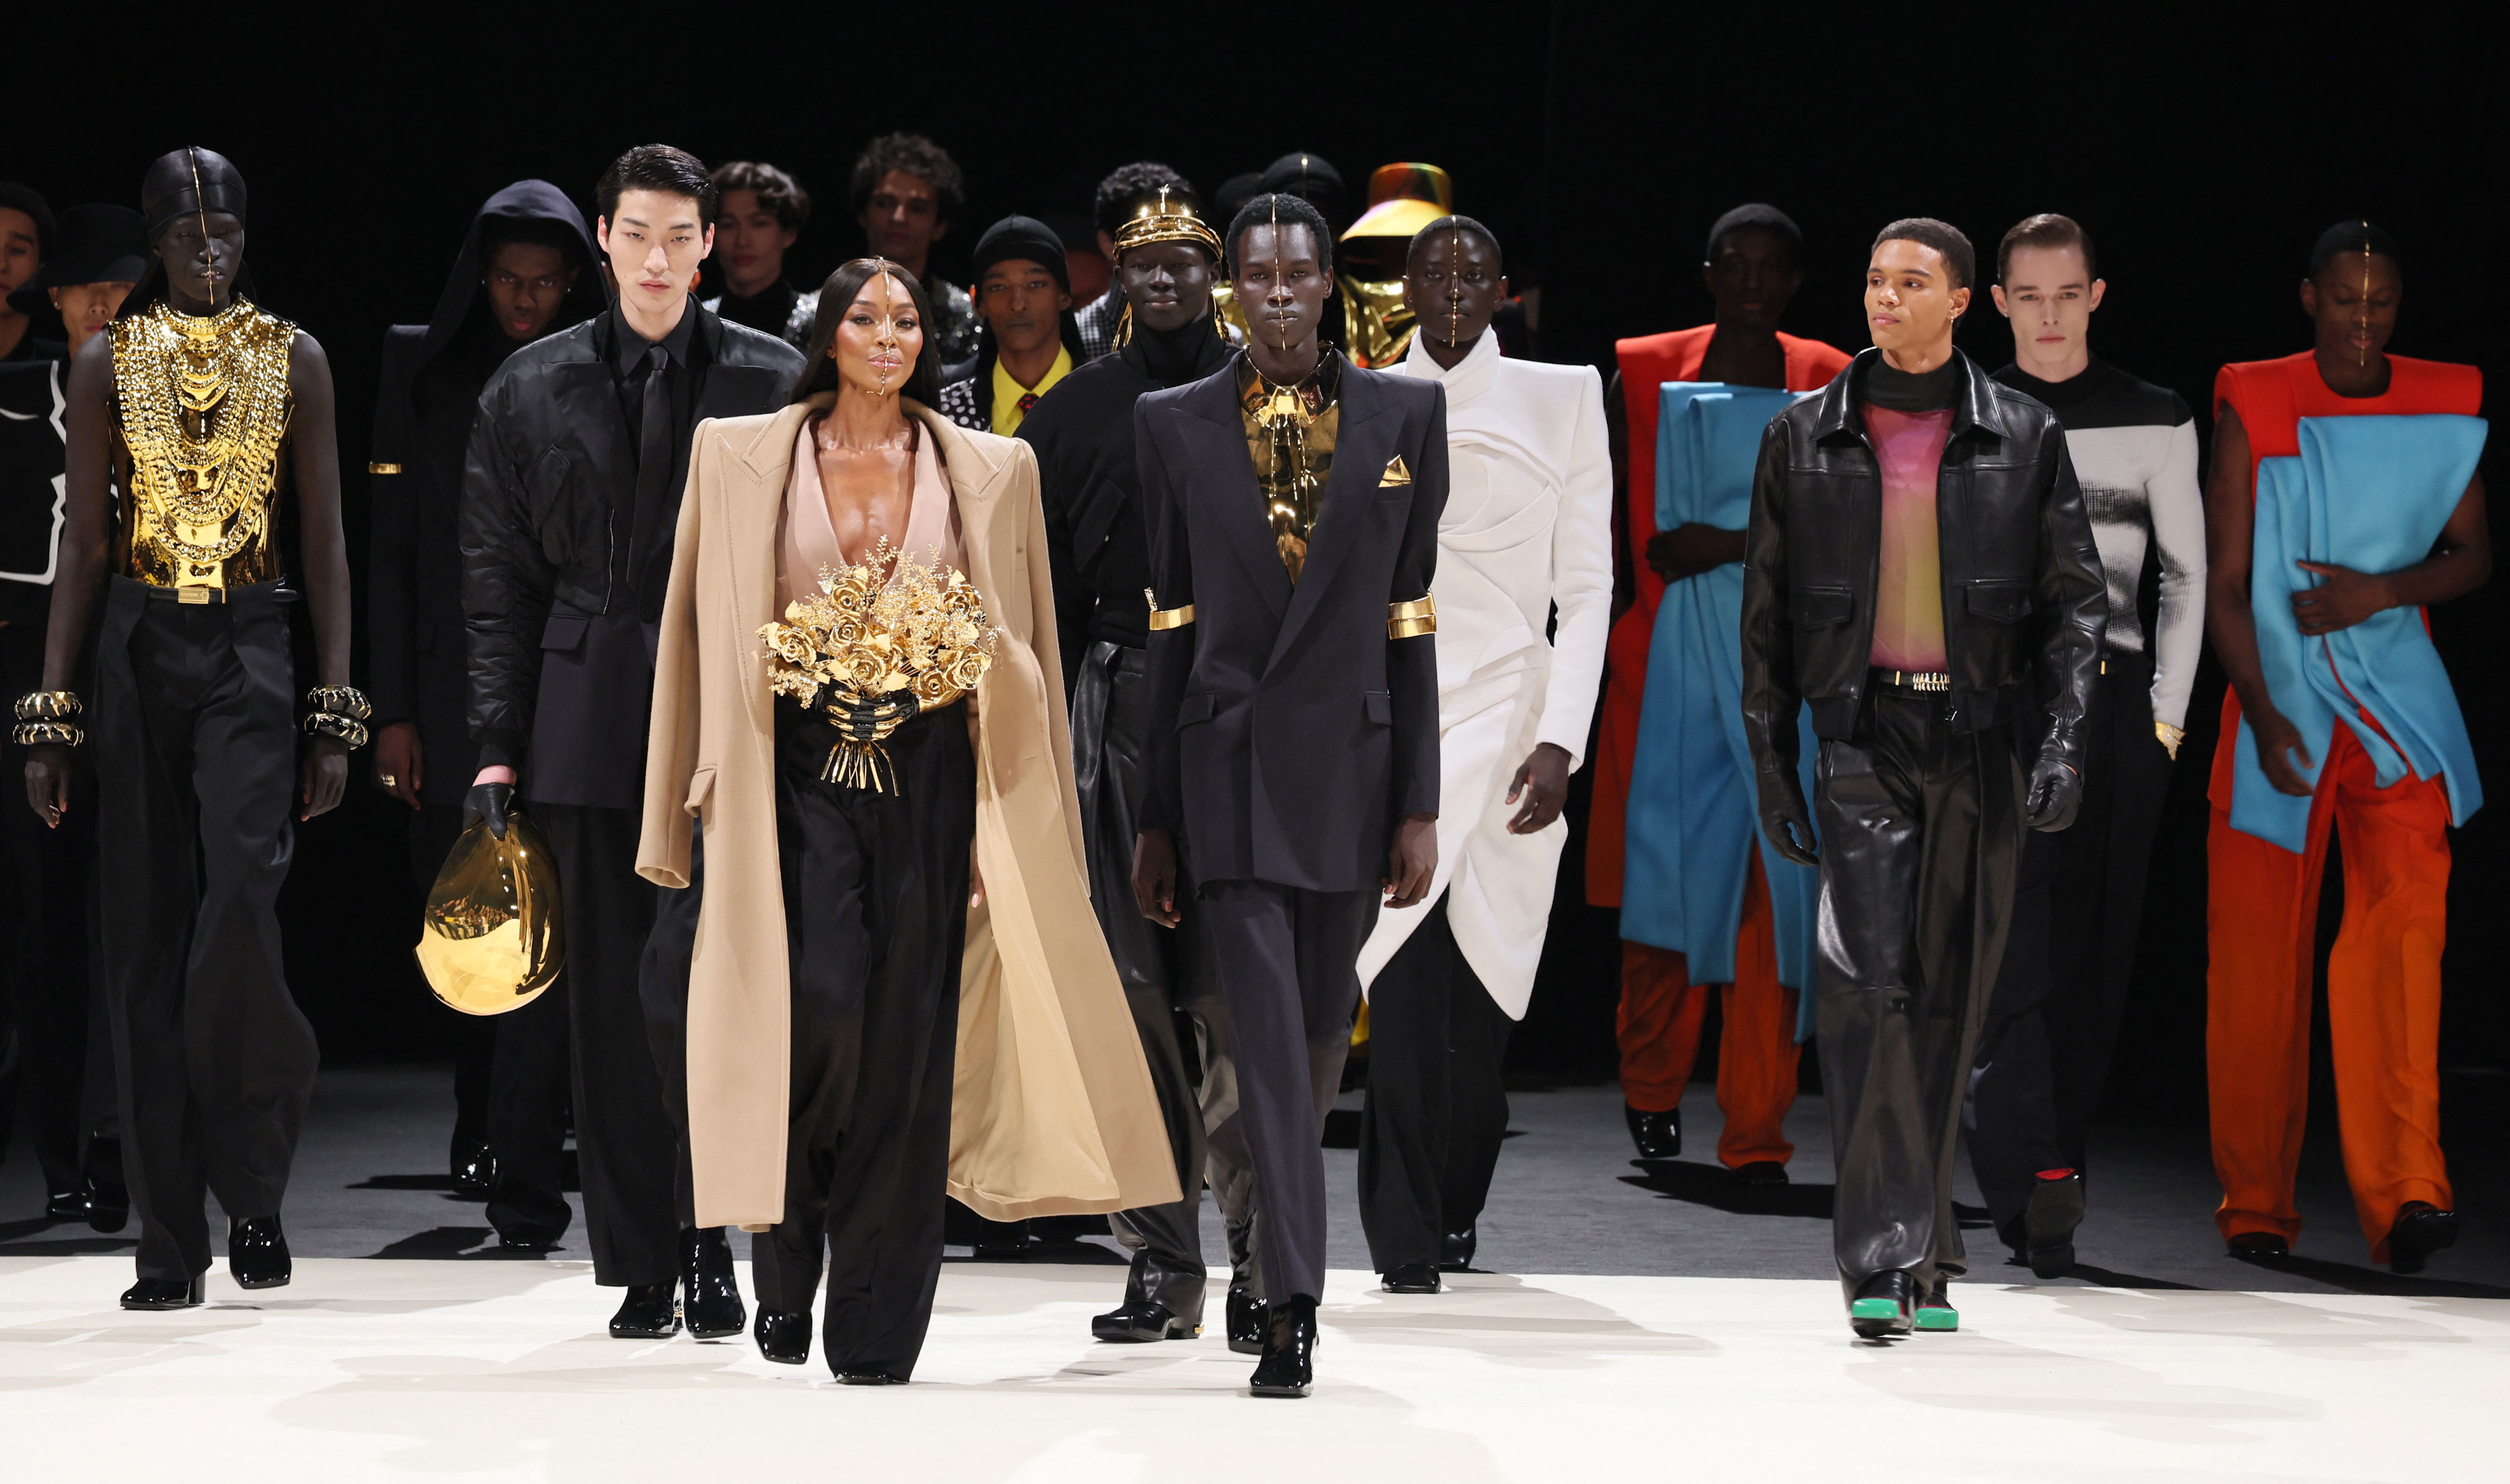 naomi campbell powerfully closes balmain’s menswear show at paris fashion week